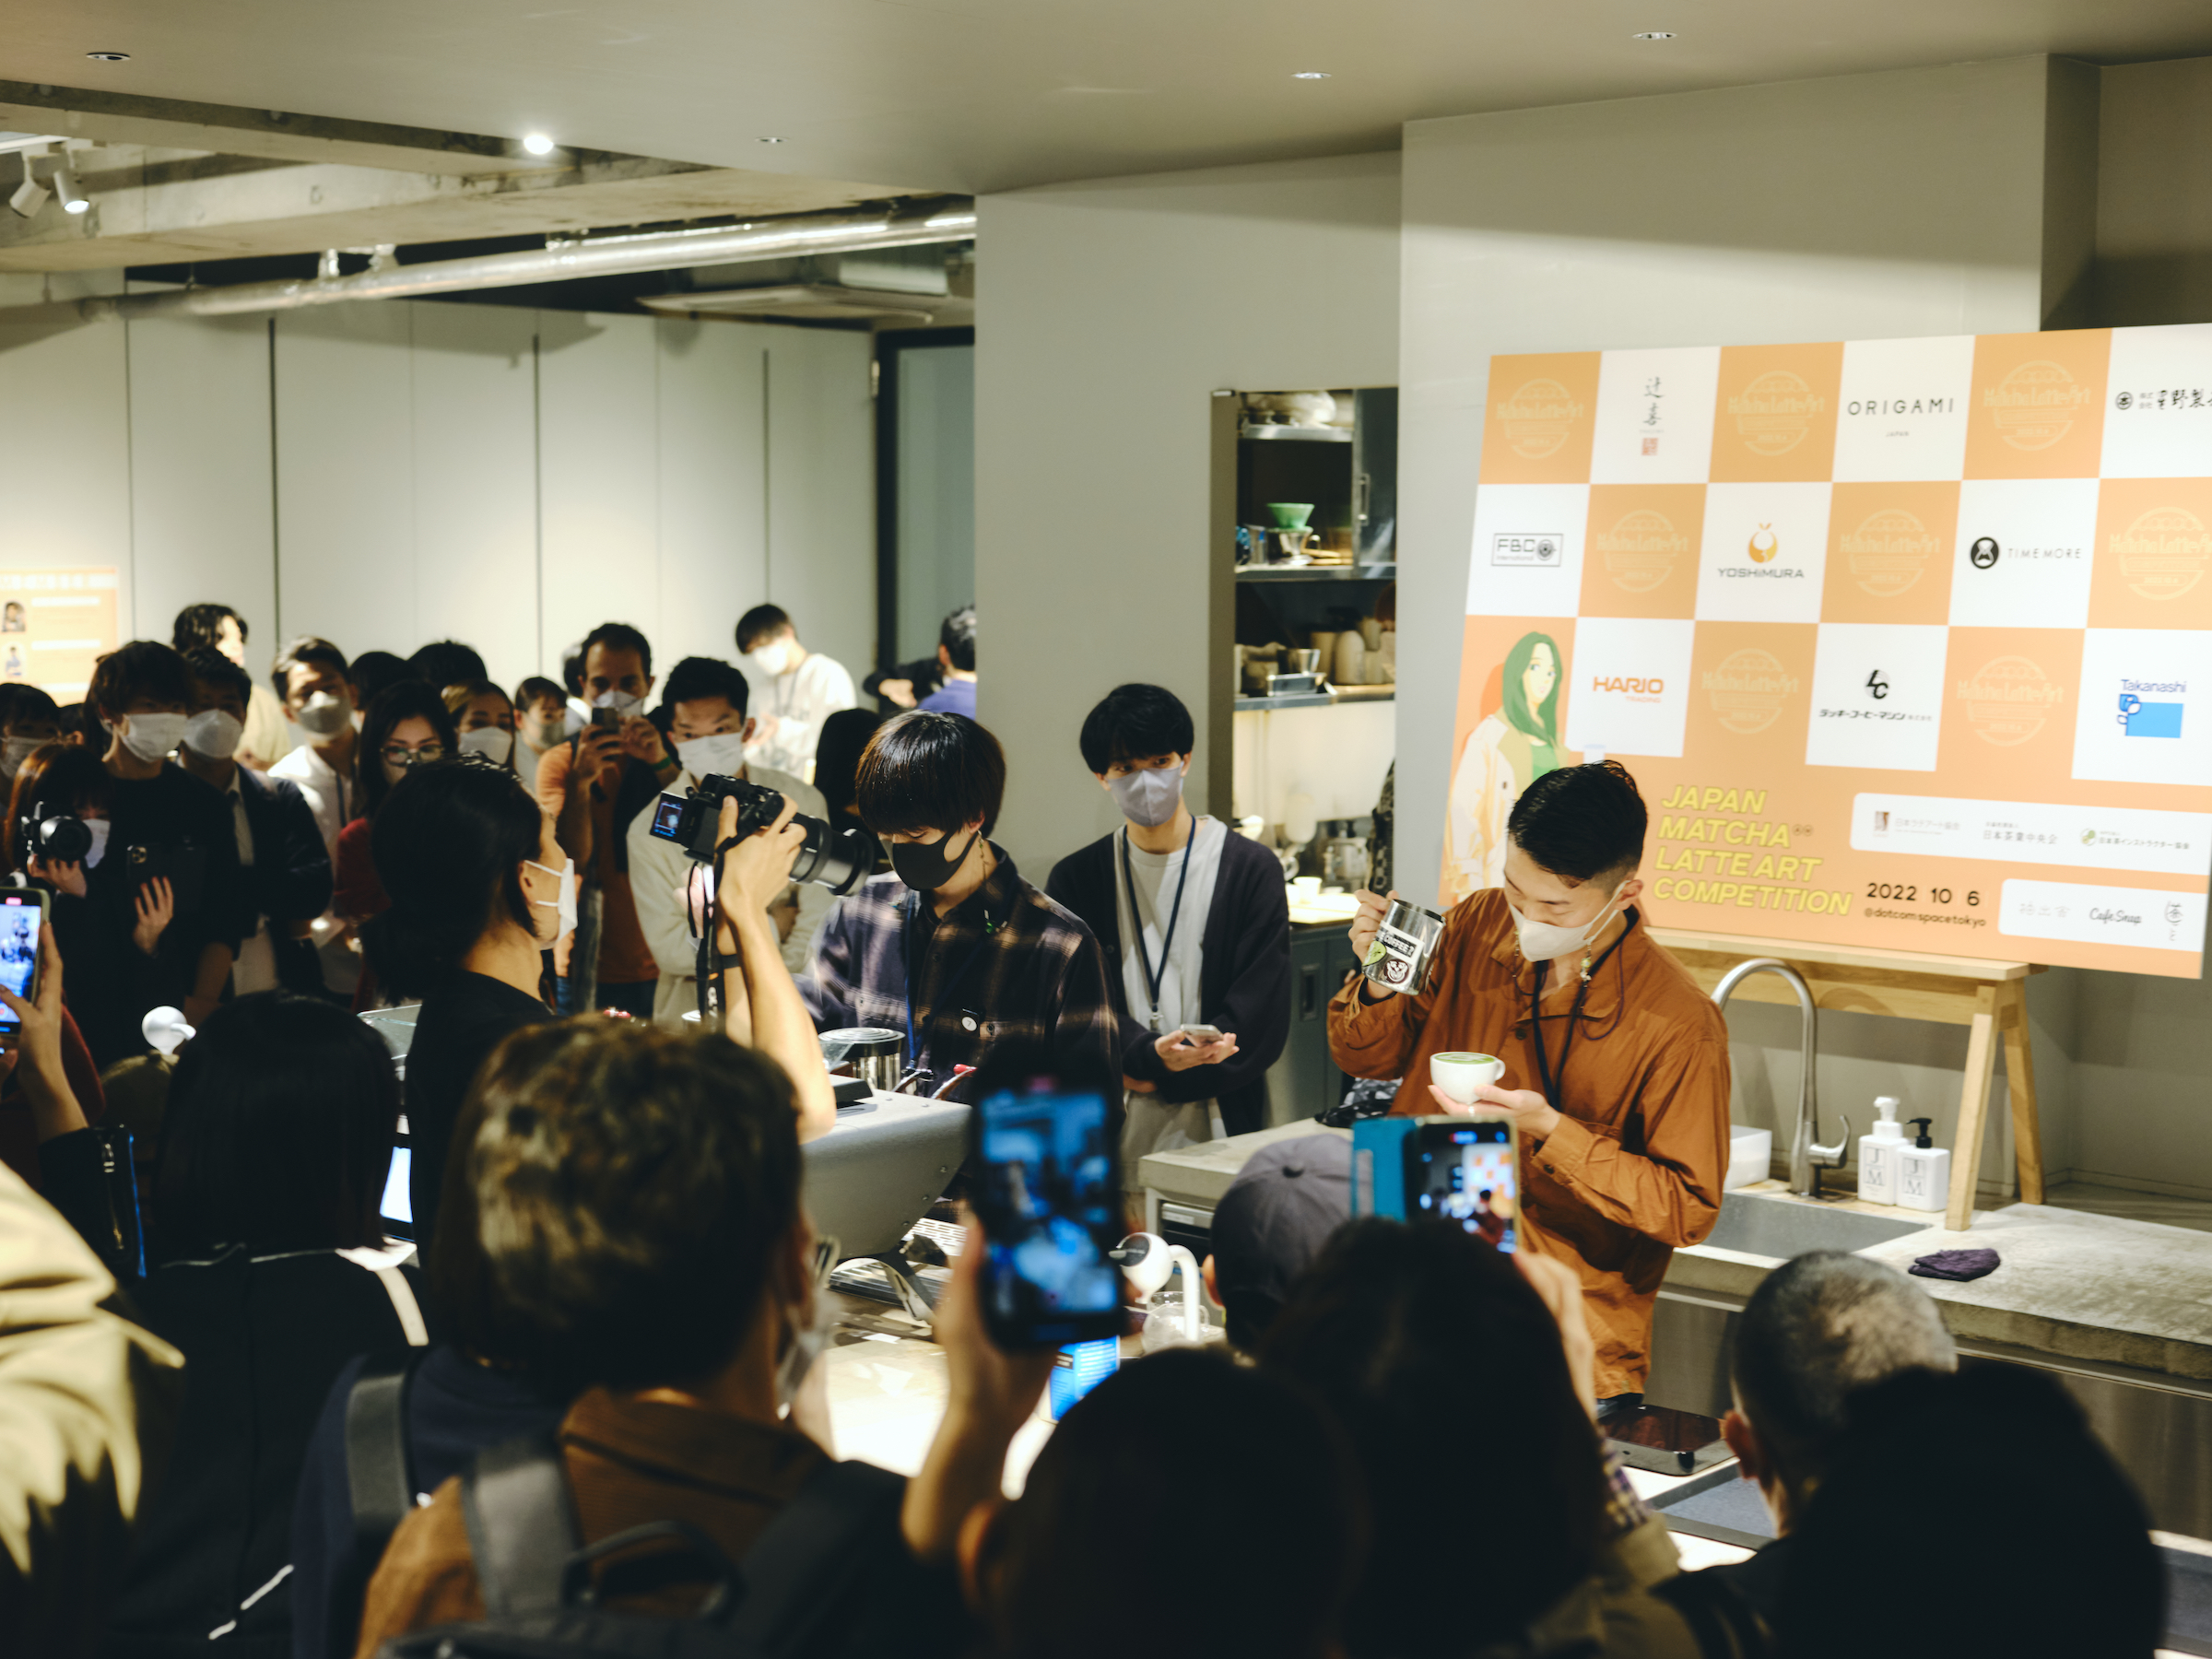 コロナ禍を乗り越え新たなステージへ。抹茶ラテアート大会「Japan Matcha Latte Art Competition 2022」